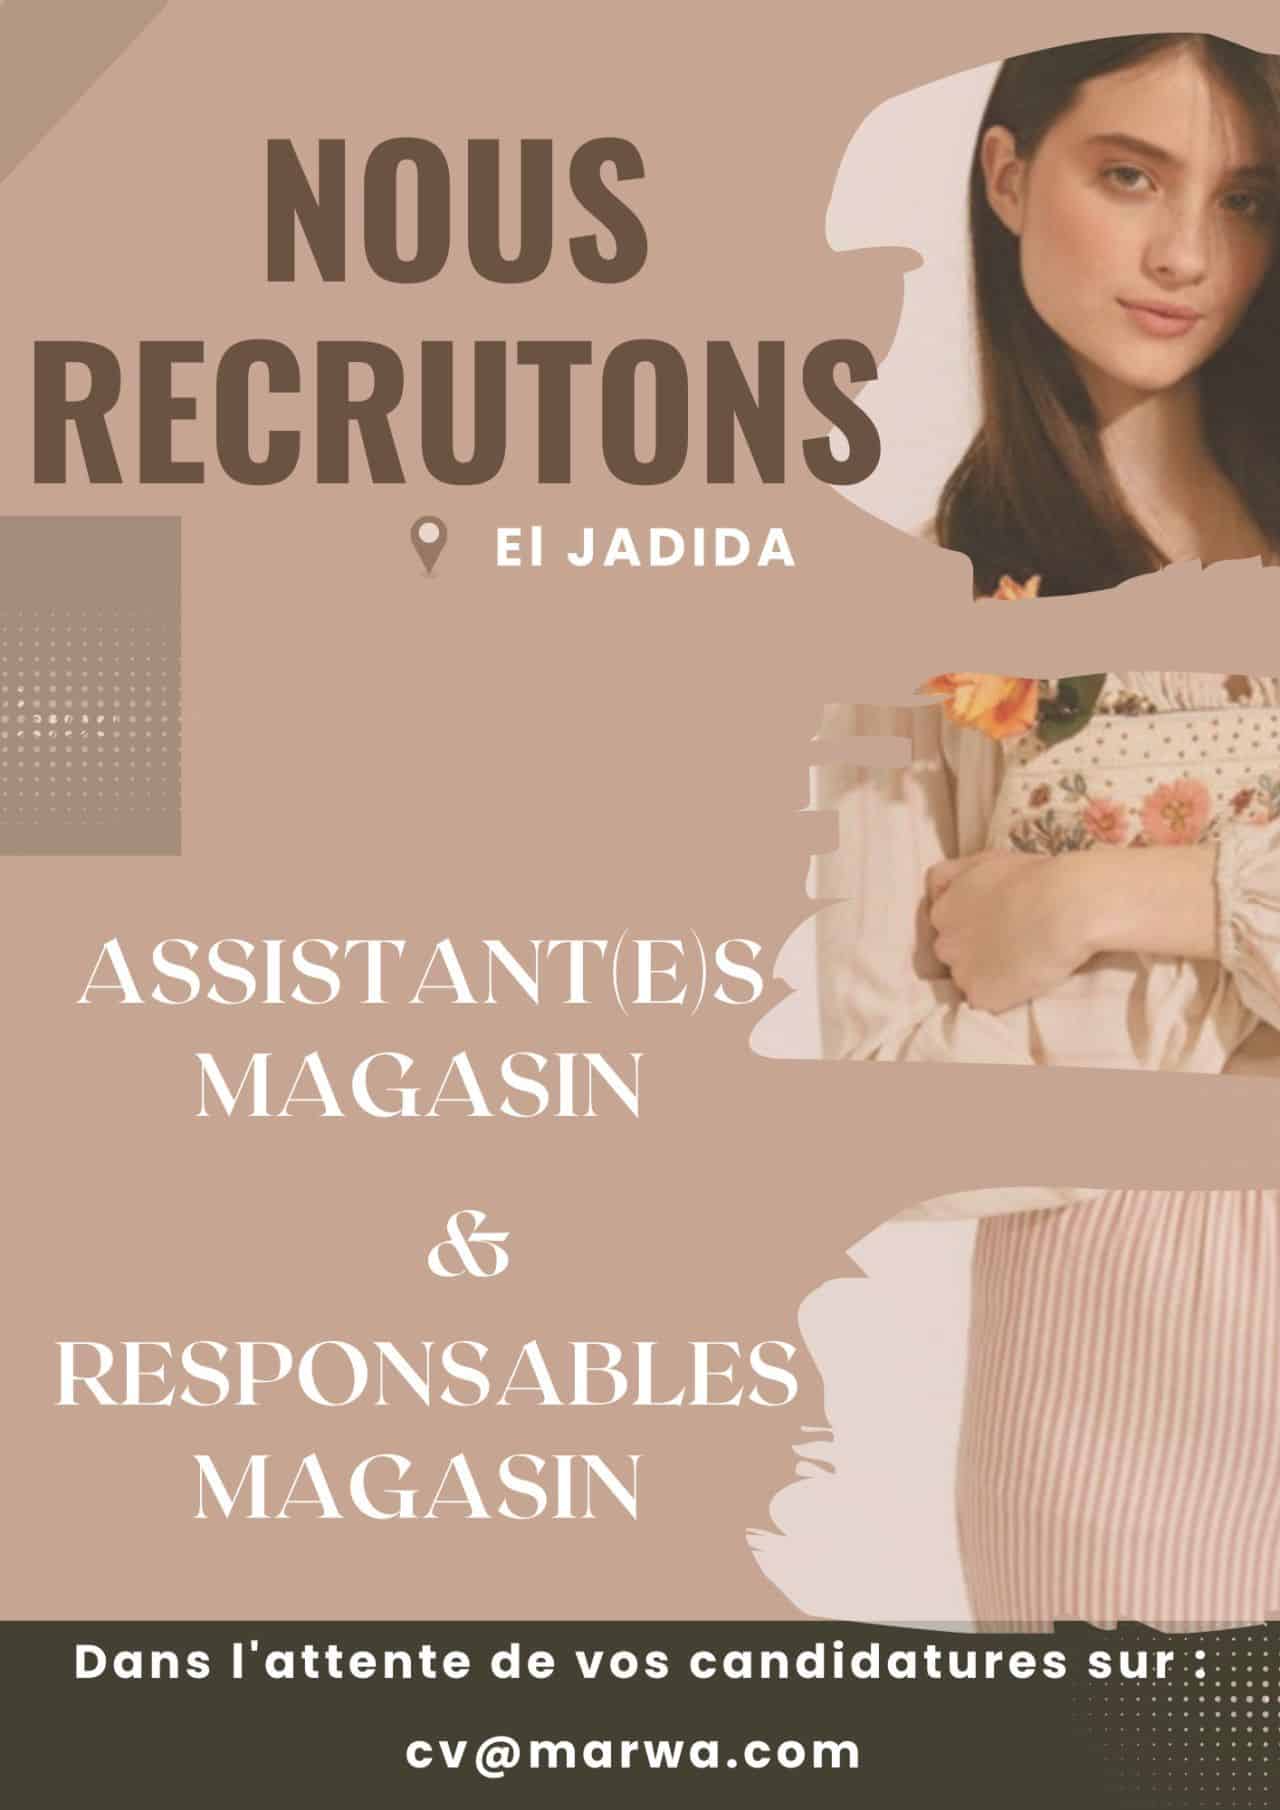 Marwa recrute des Responsables et Assistants Magasins